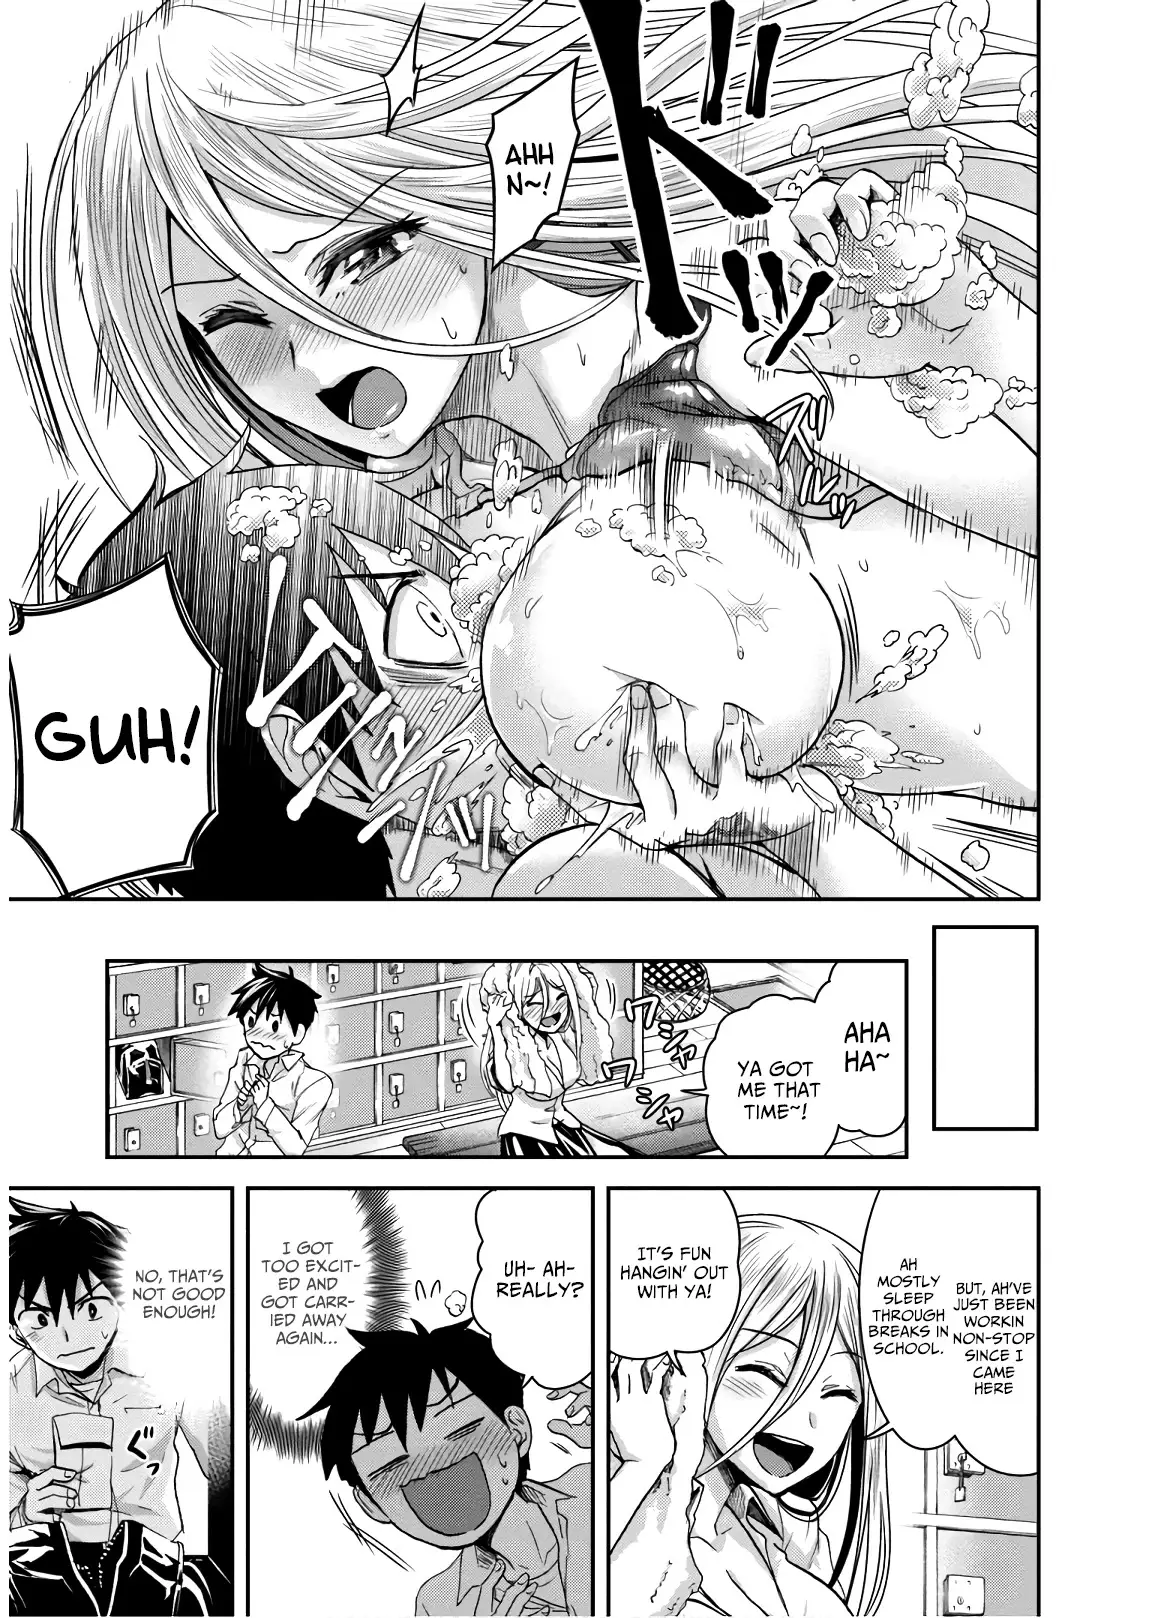 Shinobi Kill - 8 page 15